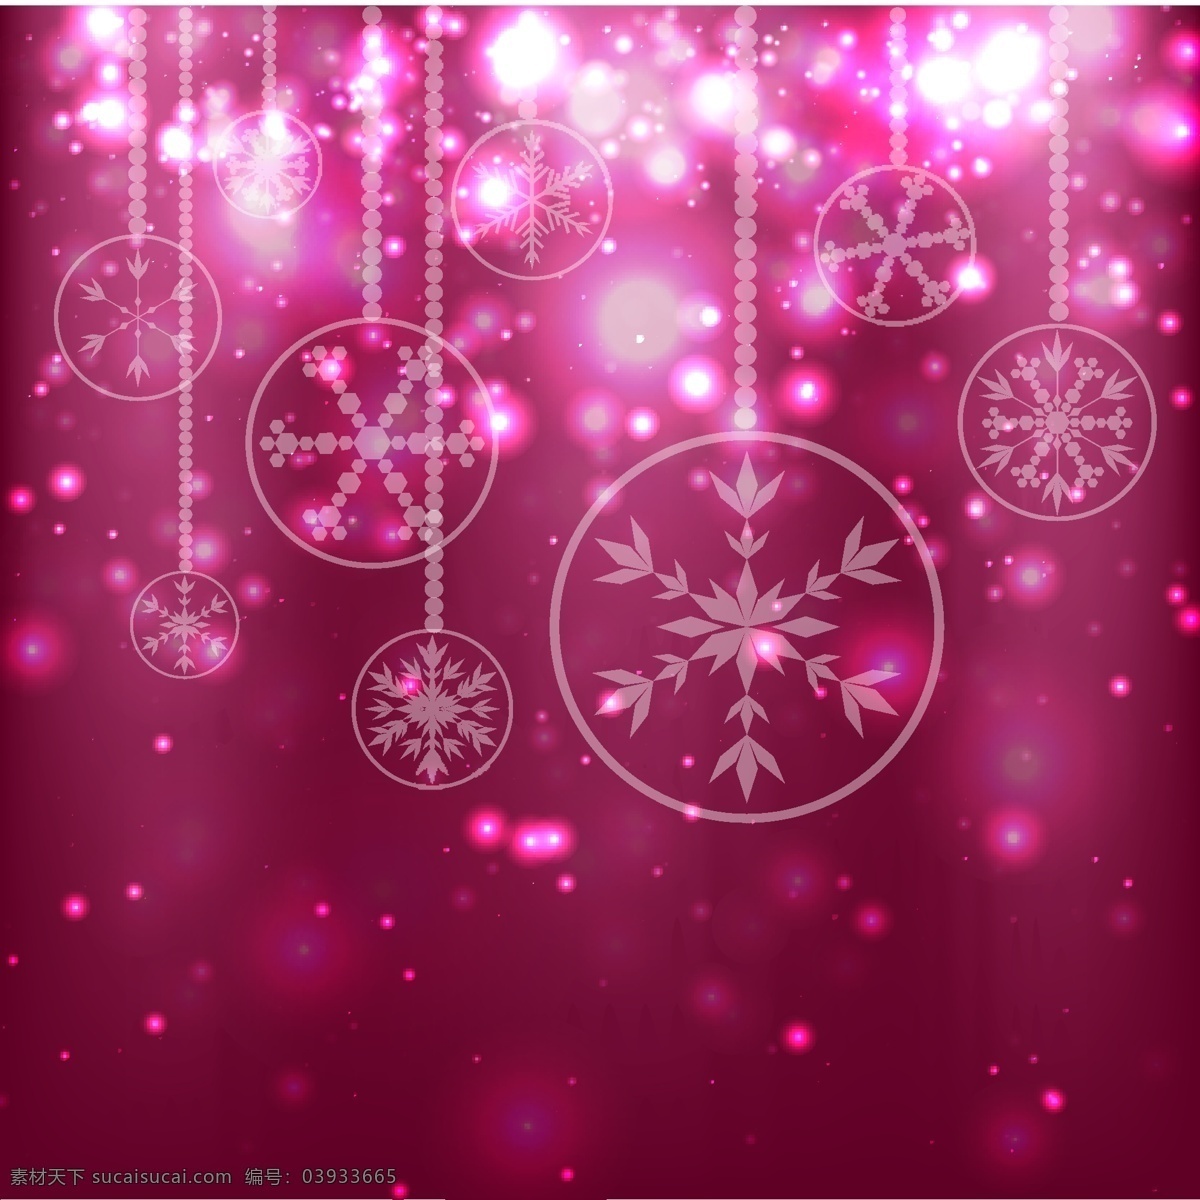 圣诞 吊饰 源文件 背景 标签 卡片背景 圣诞节 矢量图 图标 雪花 紫色背景 矢量 节日素材